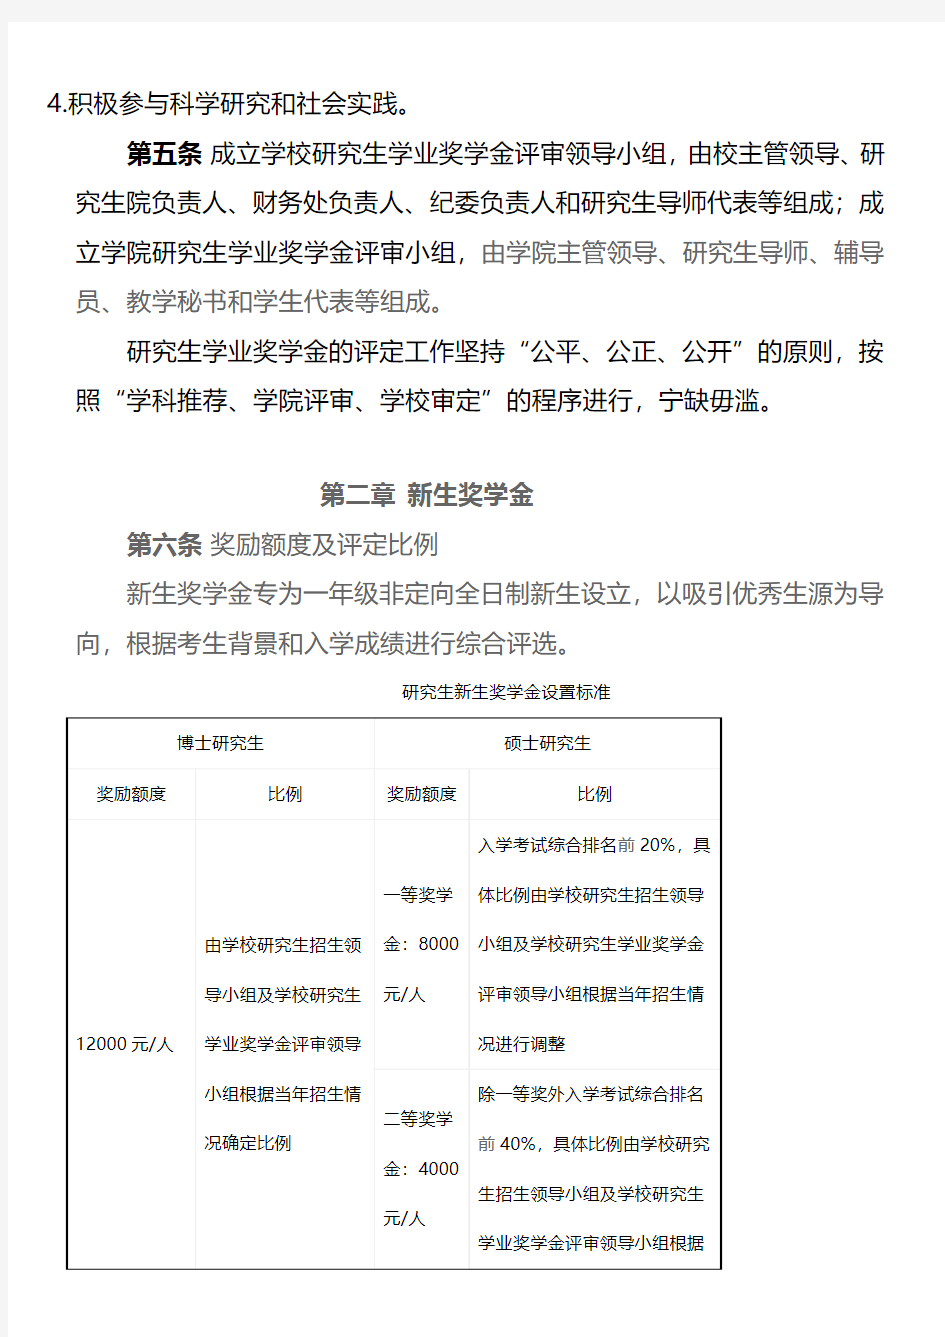 上海海事大学全日制研究生学业奖学金实施办法